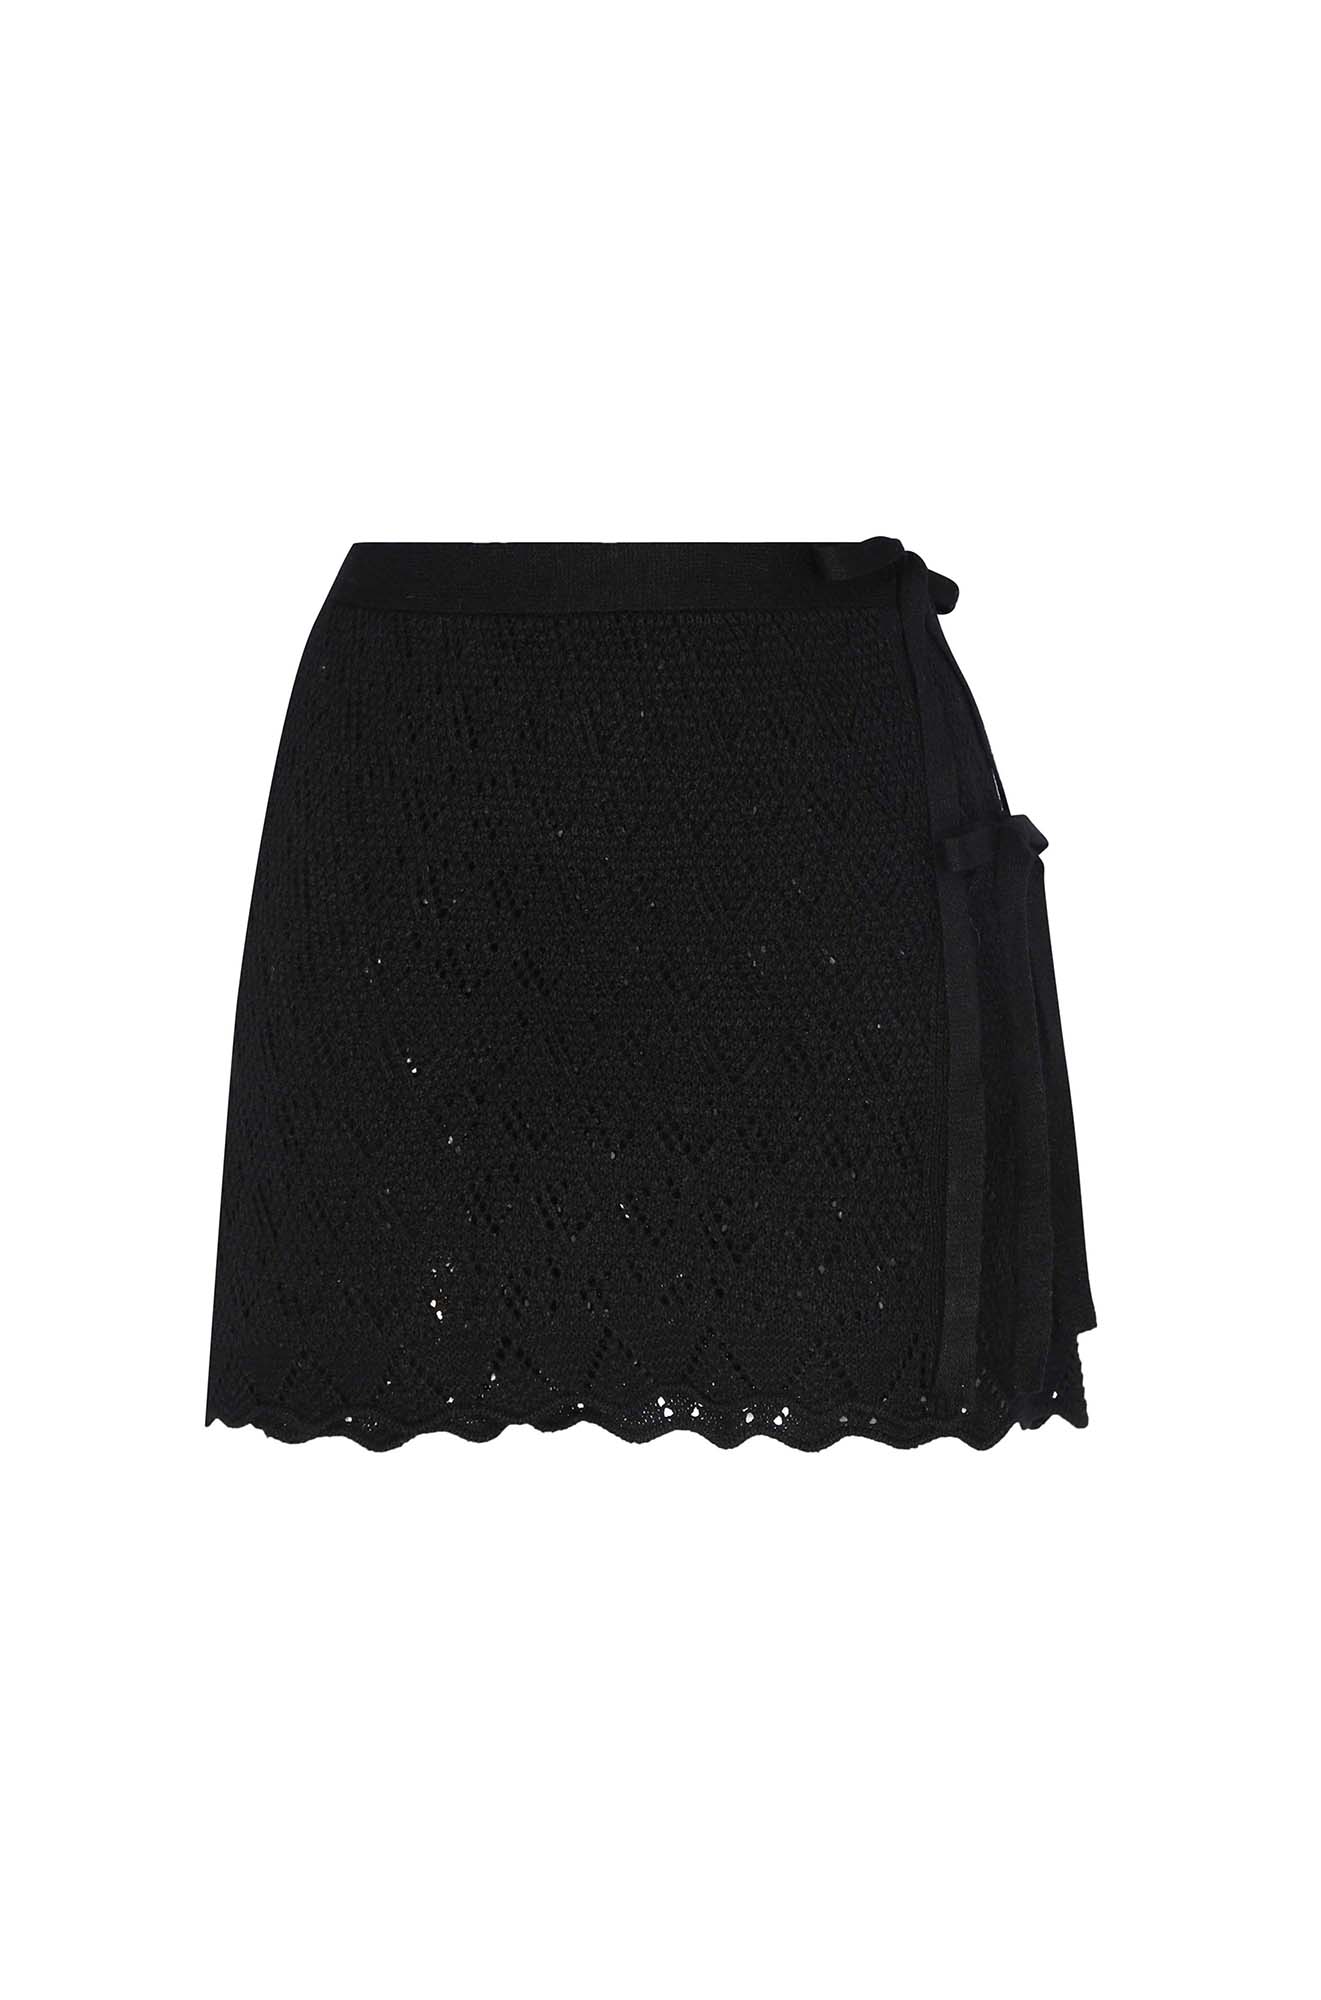 Kaia Black Knitted Skirt